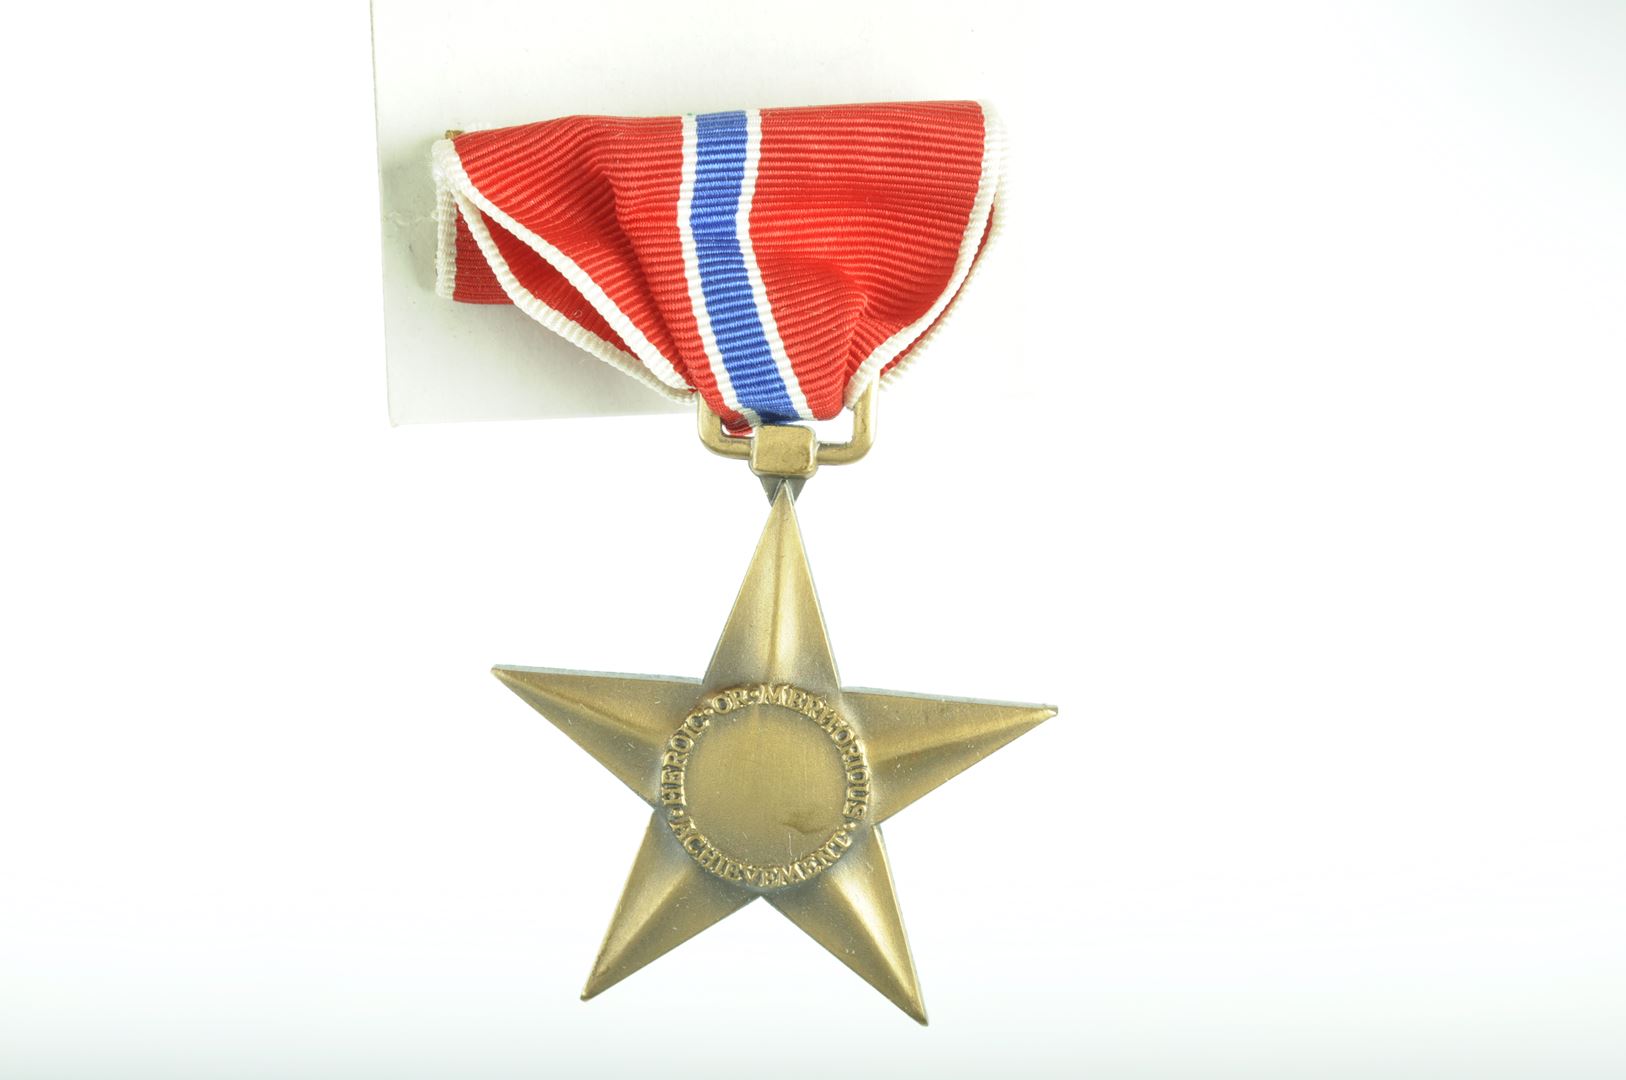 Médaille Bronze Star avec sa boite datée 1944